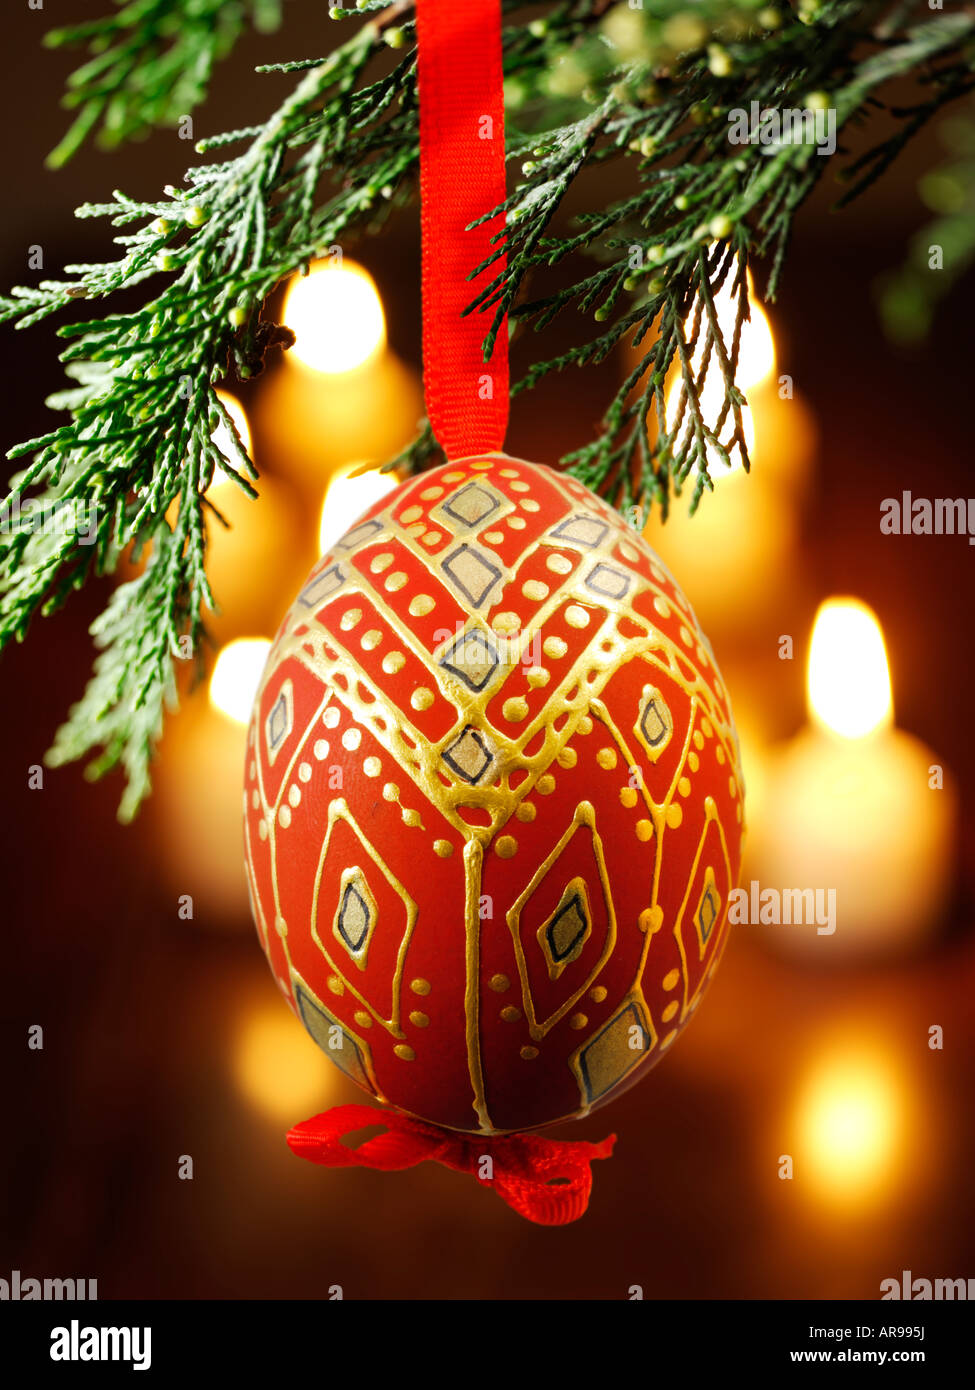 Boule de Noël traditionnelle à la décoration festive accrochée à un sapin de Noël avec lumières derrière Banque D'Images